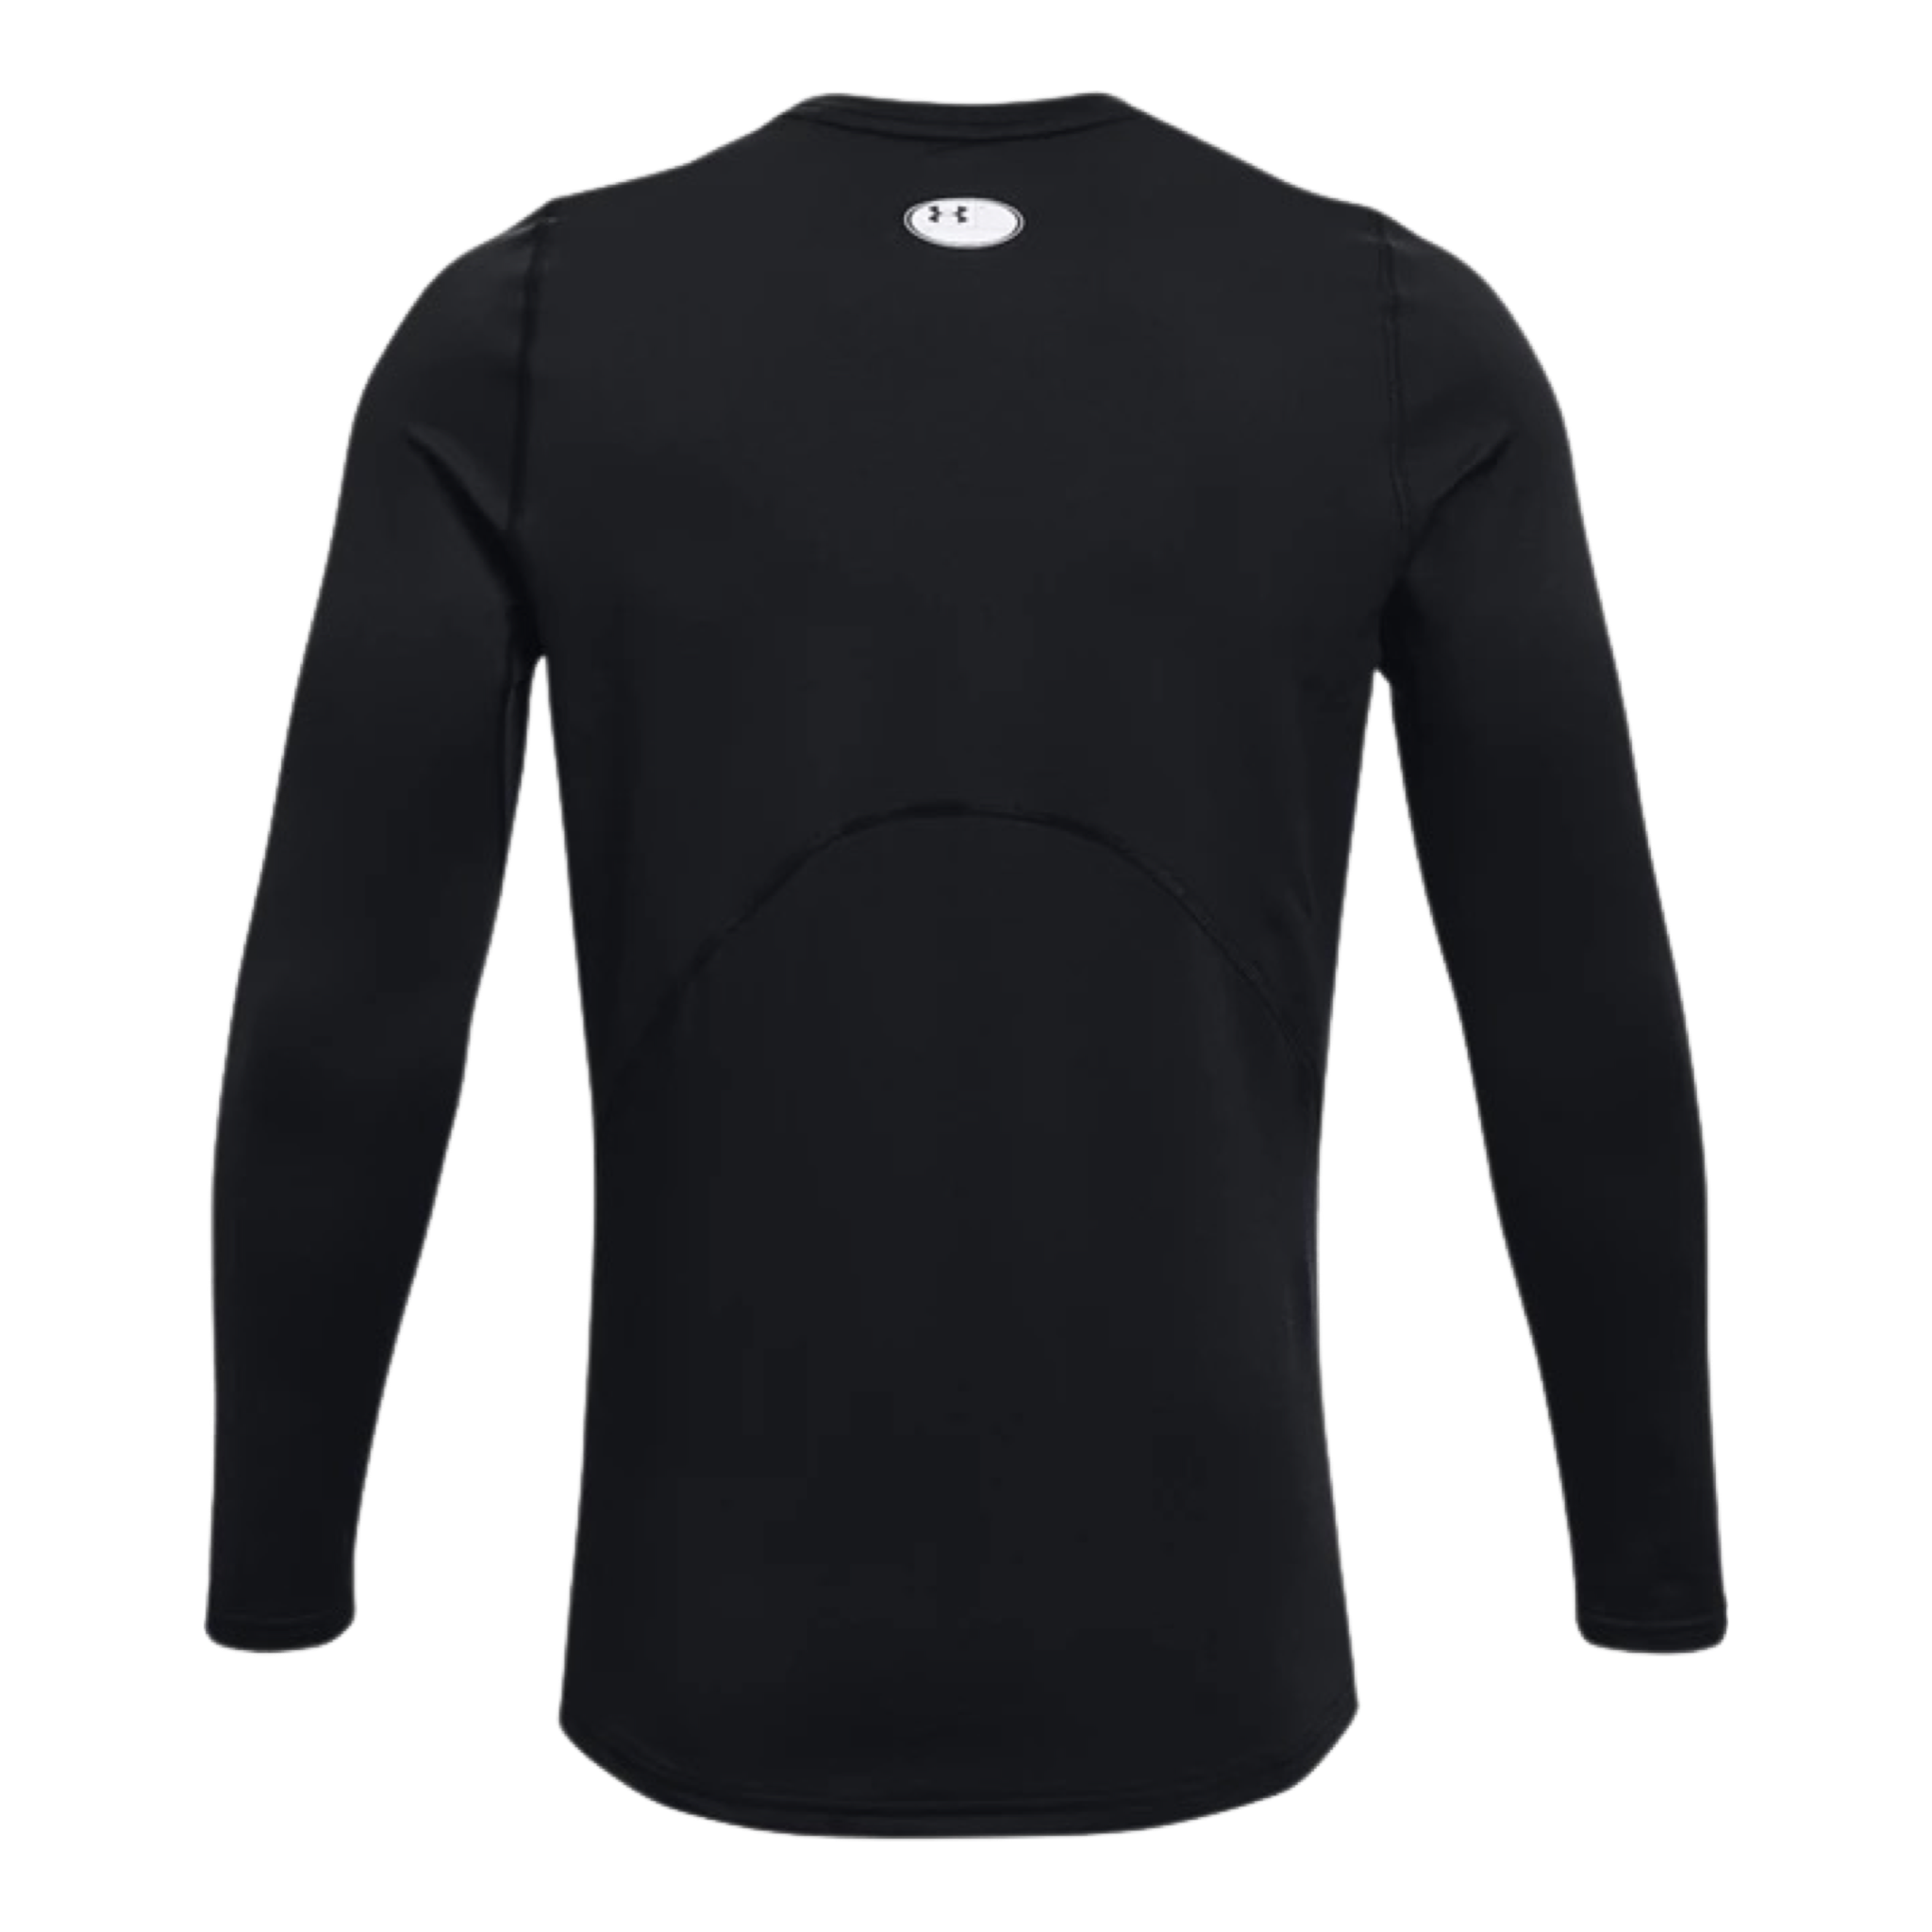 Under Armour ColdGear Compression Men's Long Sleeve T-Shirt Black  1366072-001